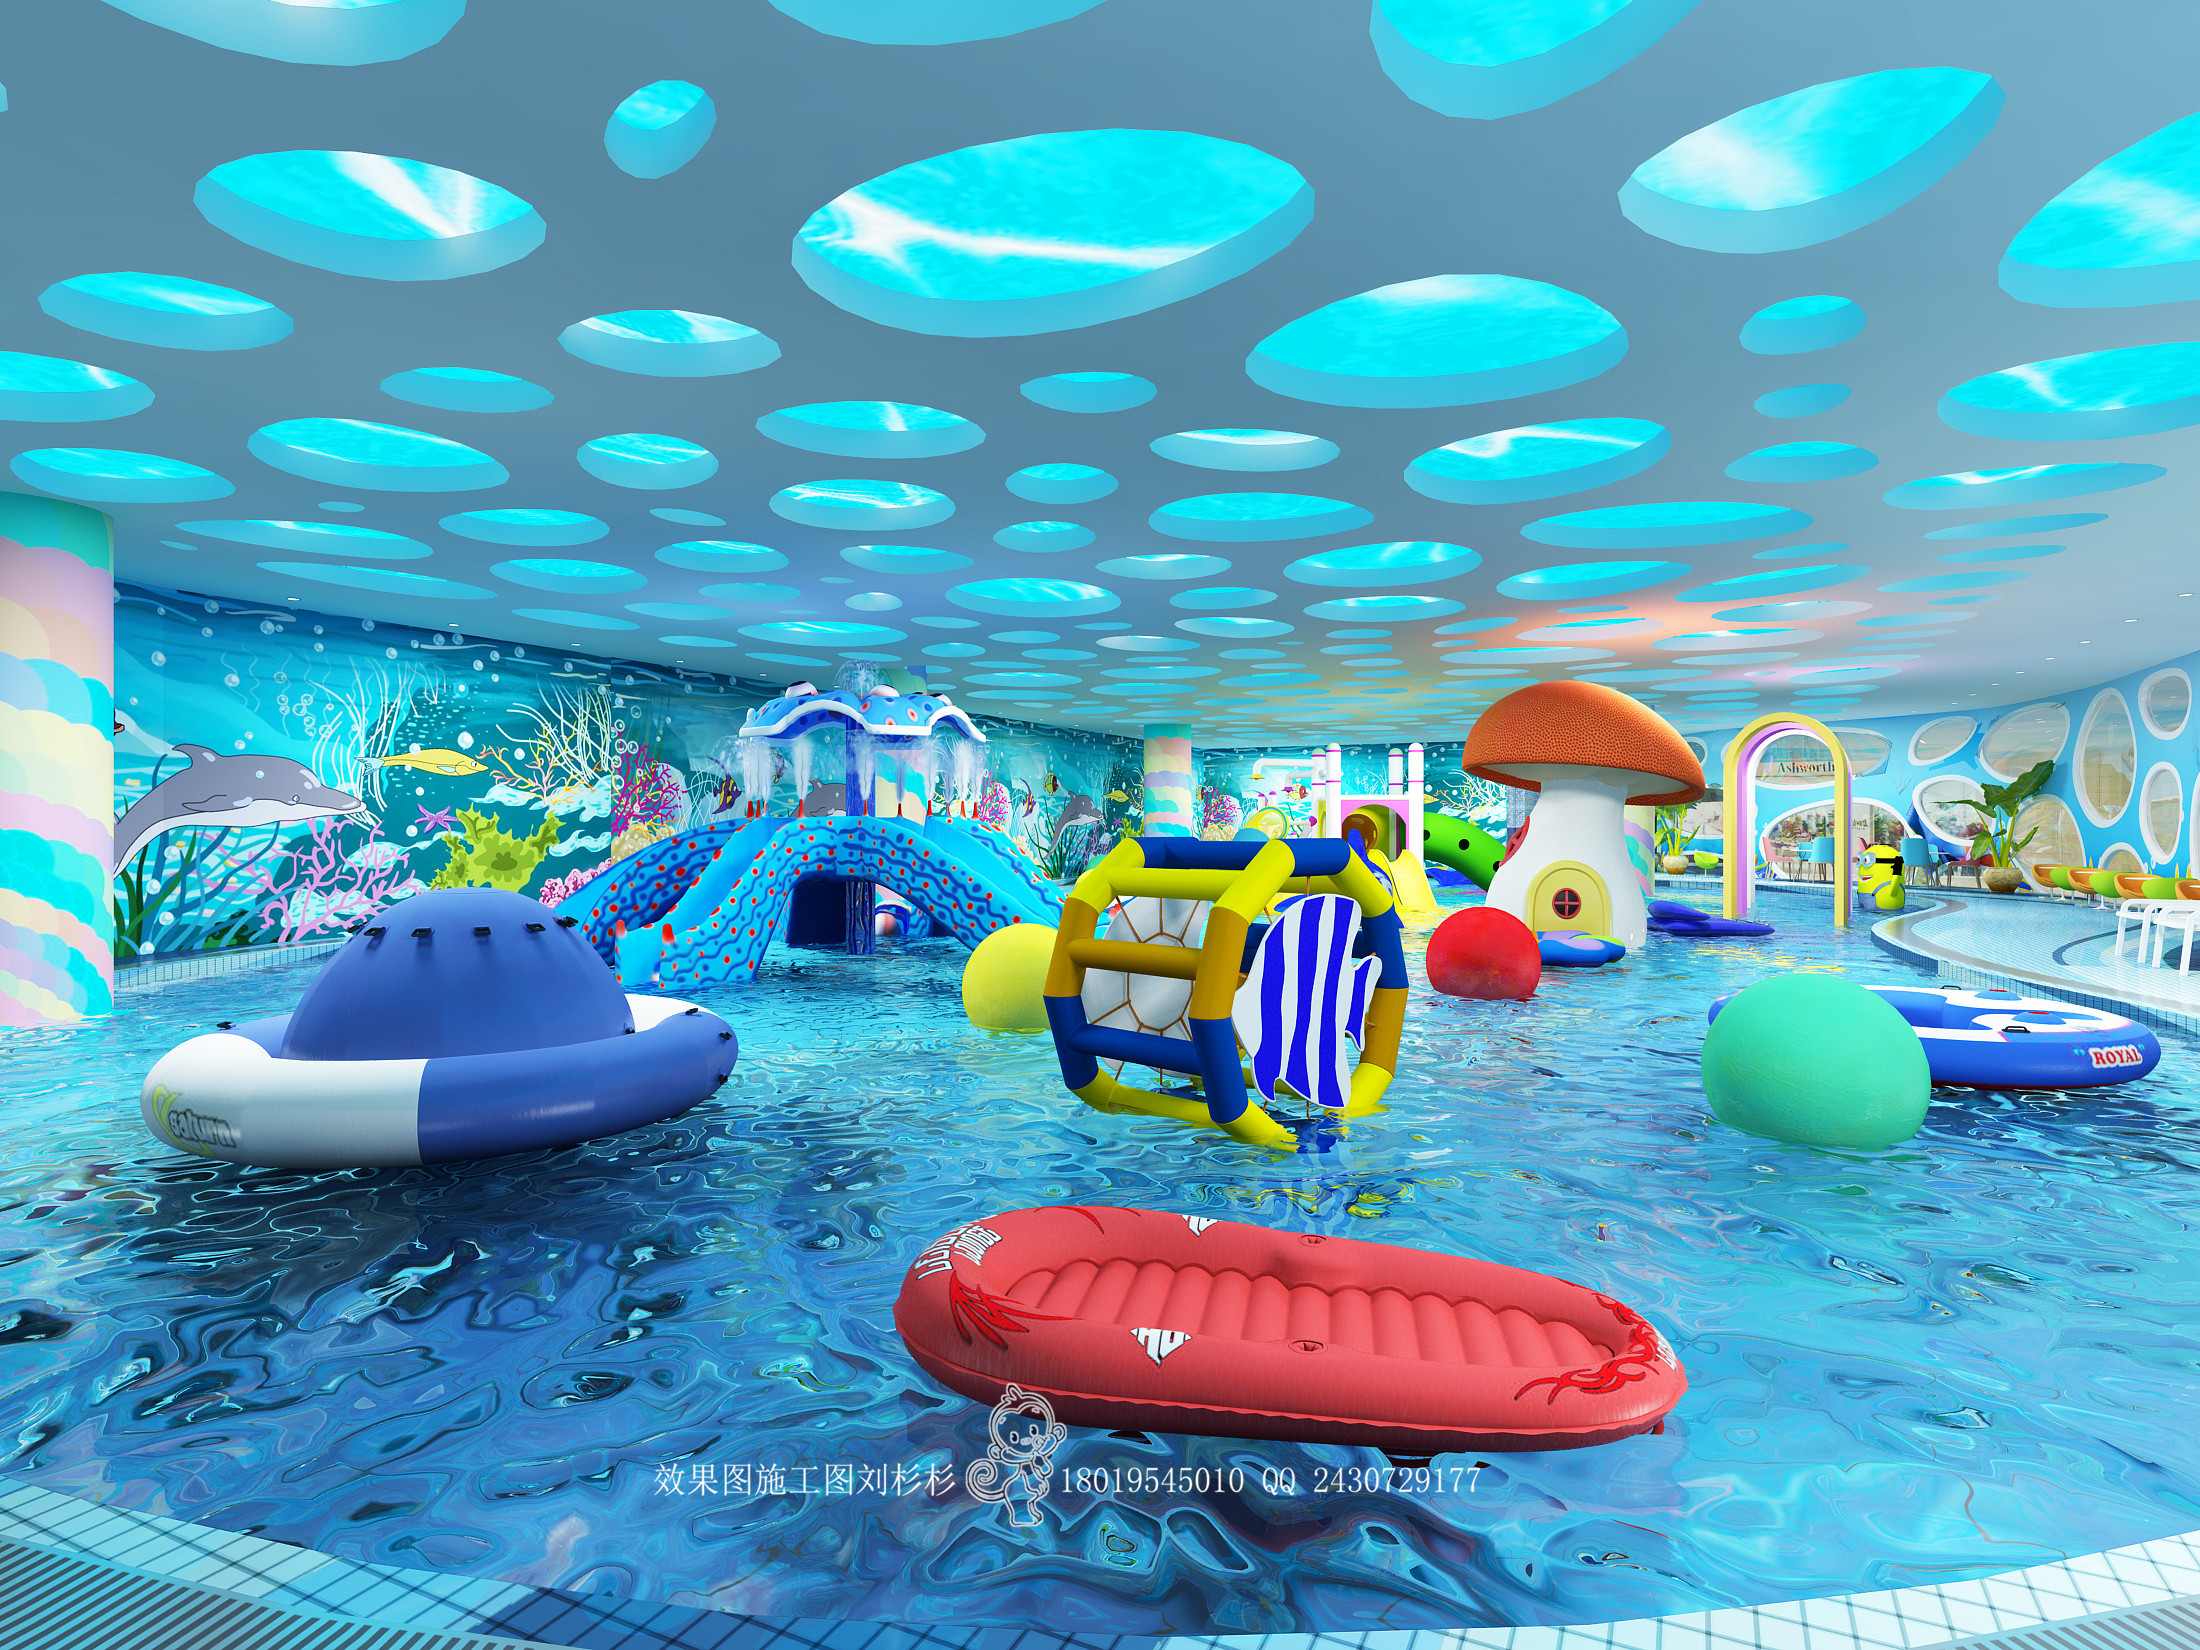 2022海洋梦幻花车巡游玩乐攻略,上海海昌海洋公园每天有一场...【去哪儿攻略】